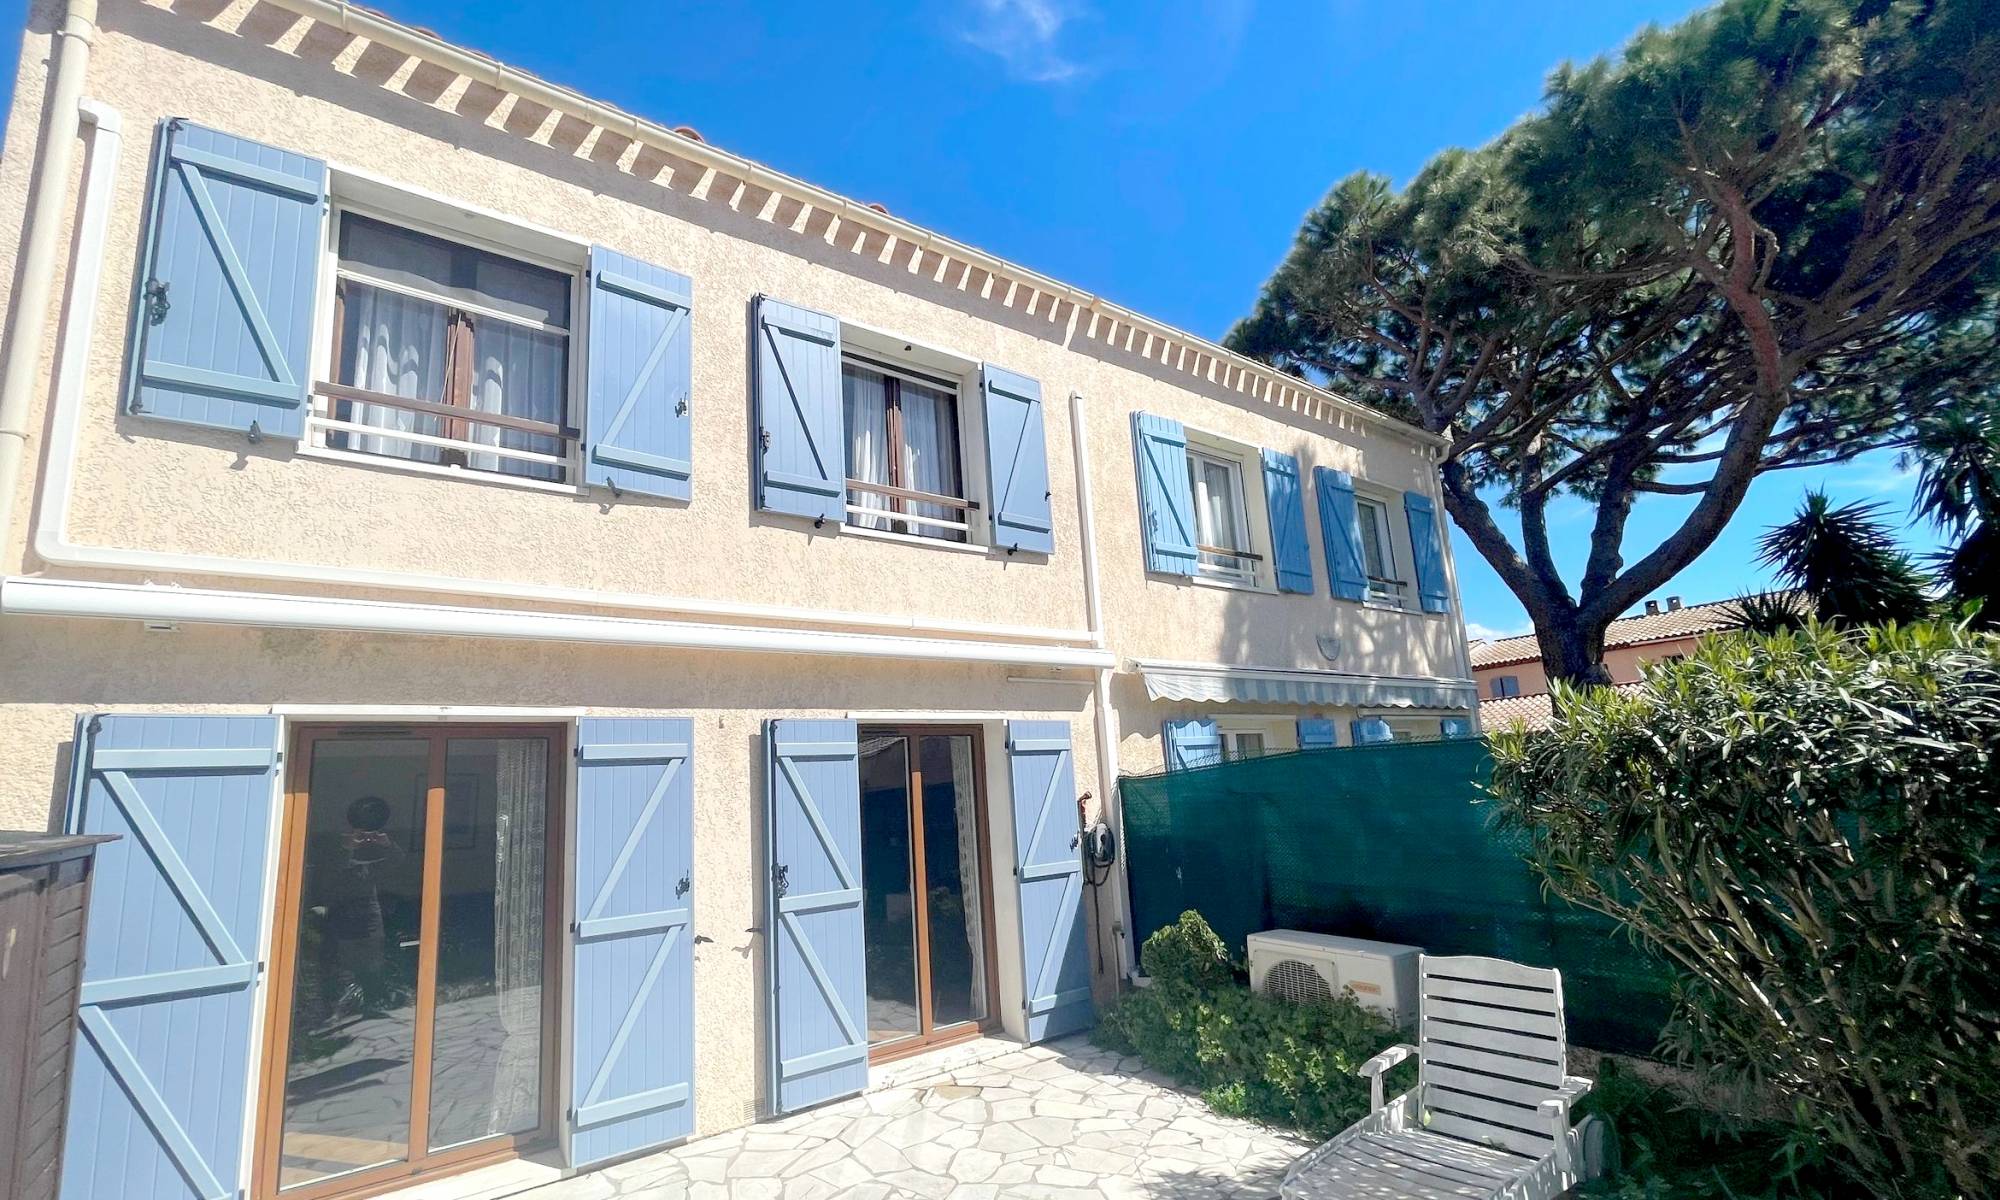 Maison de famille avec garage à vendre sur l'agglomération de Toulon, à La Seyne-sur-Mer